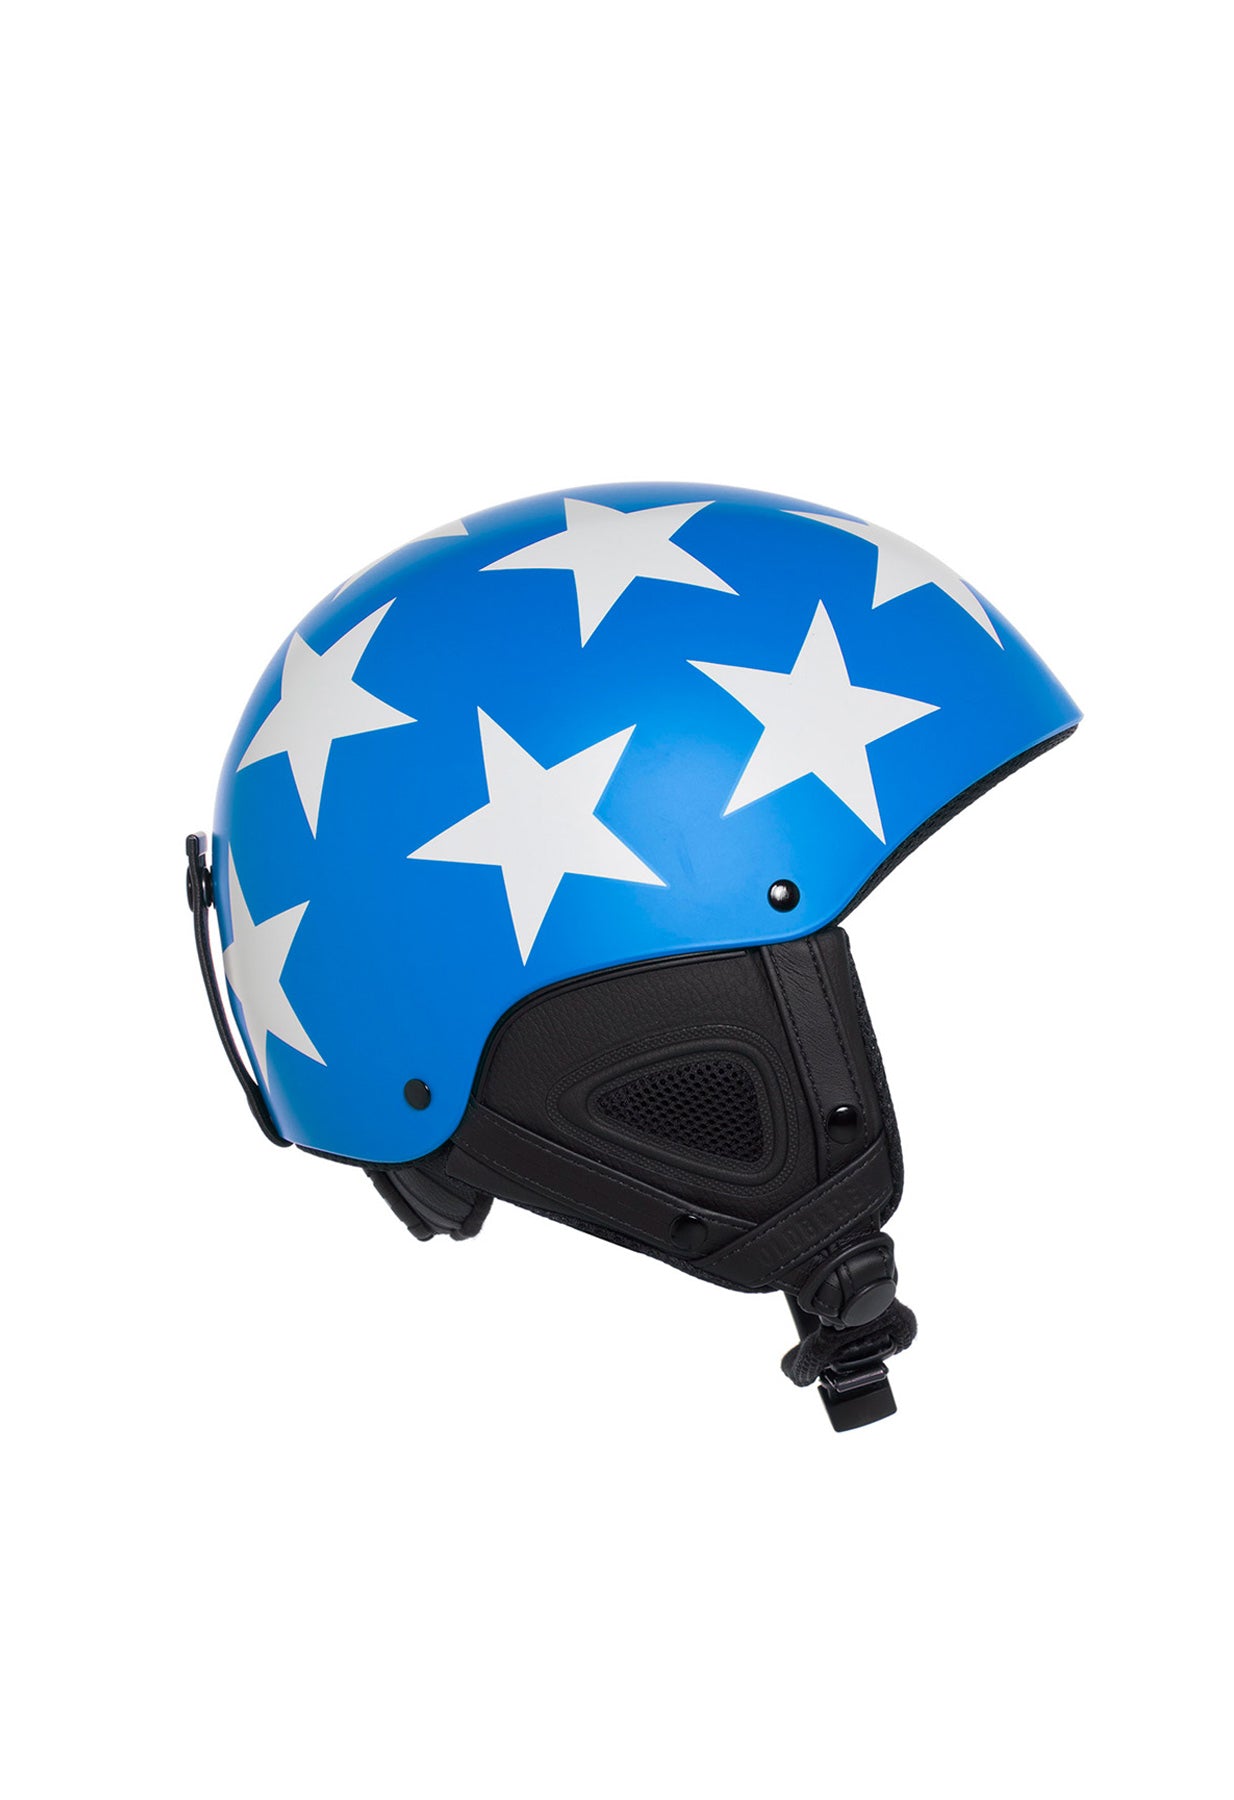 Goldbergh Smasher Ski Helmet in Blue